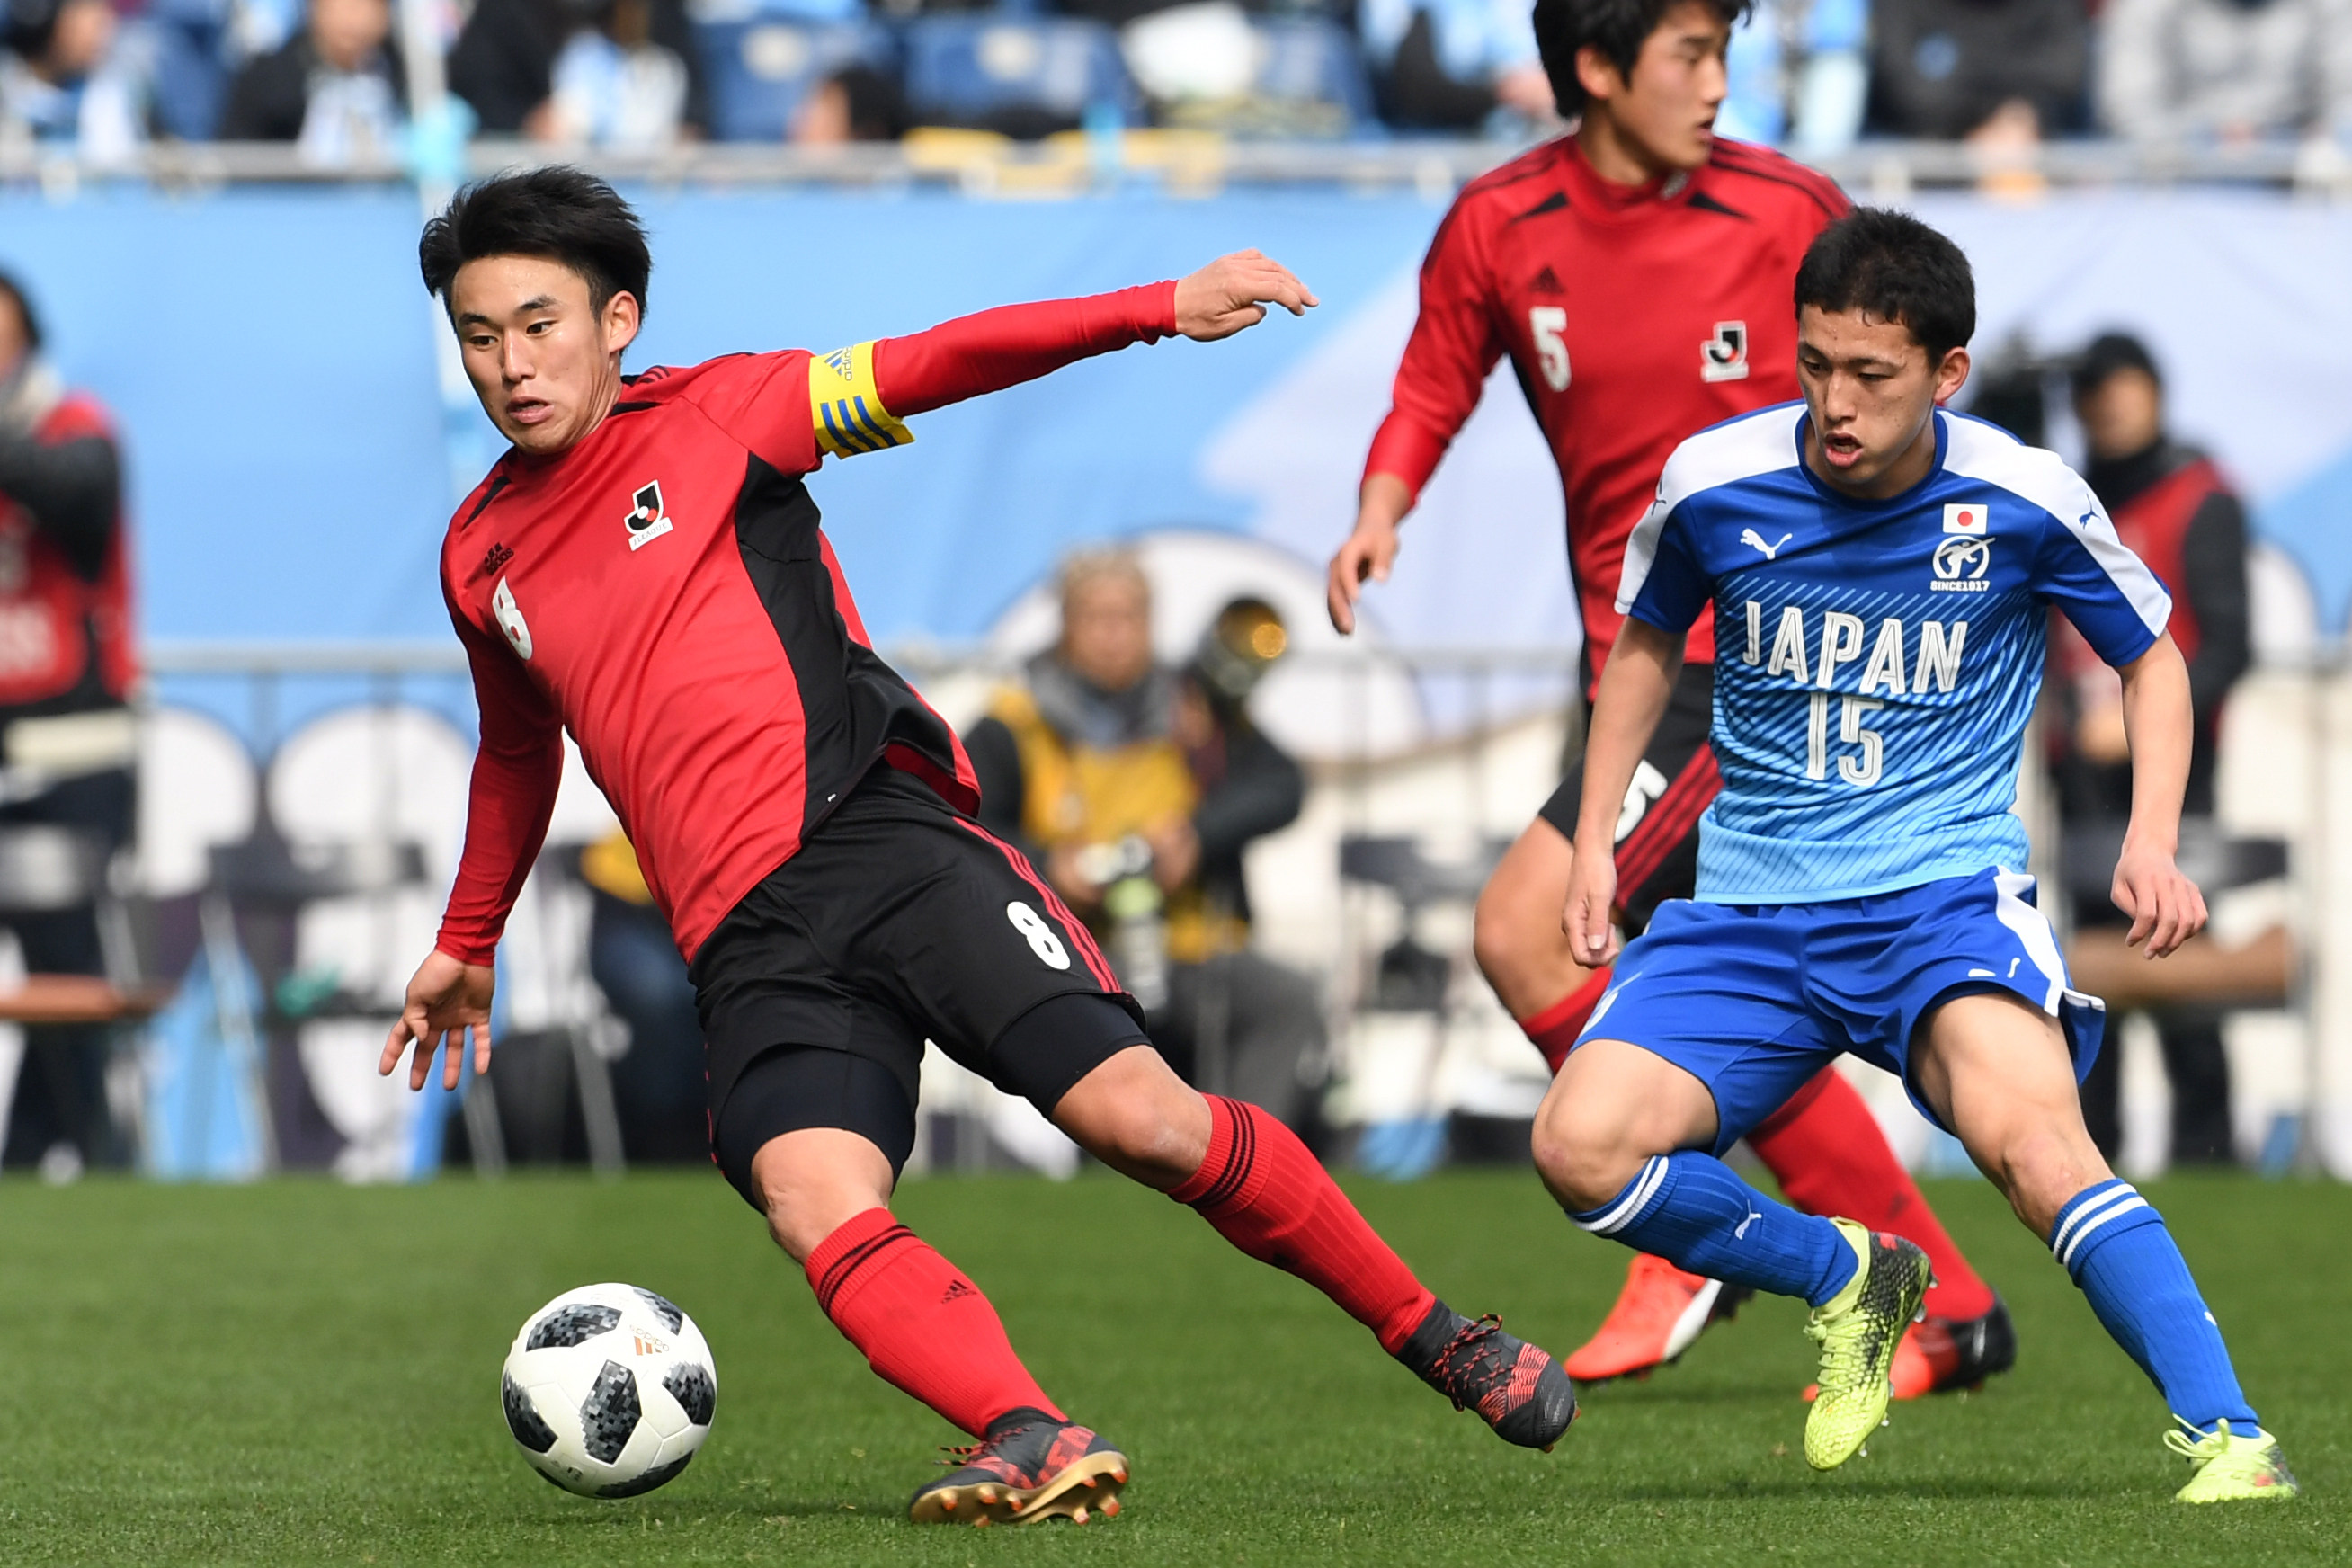 日本高校サッカー選抜との対戦へ U 18jリーグ選抜メンバーが発表 サッカーキング